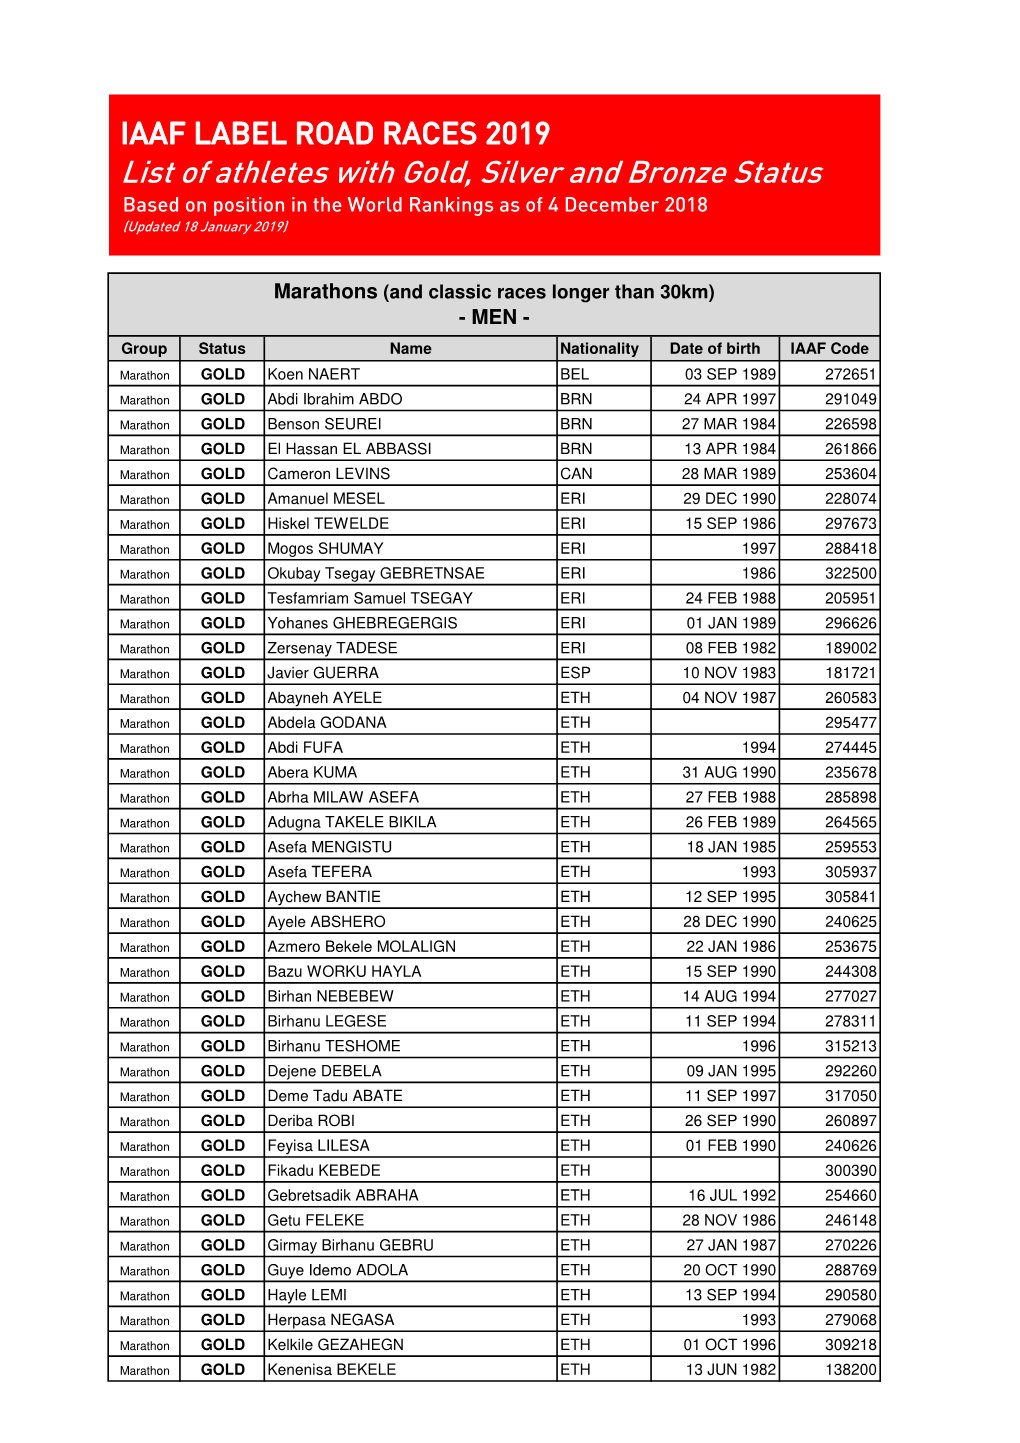 List of Athletes with IAAF Label Status 2019